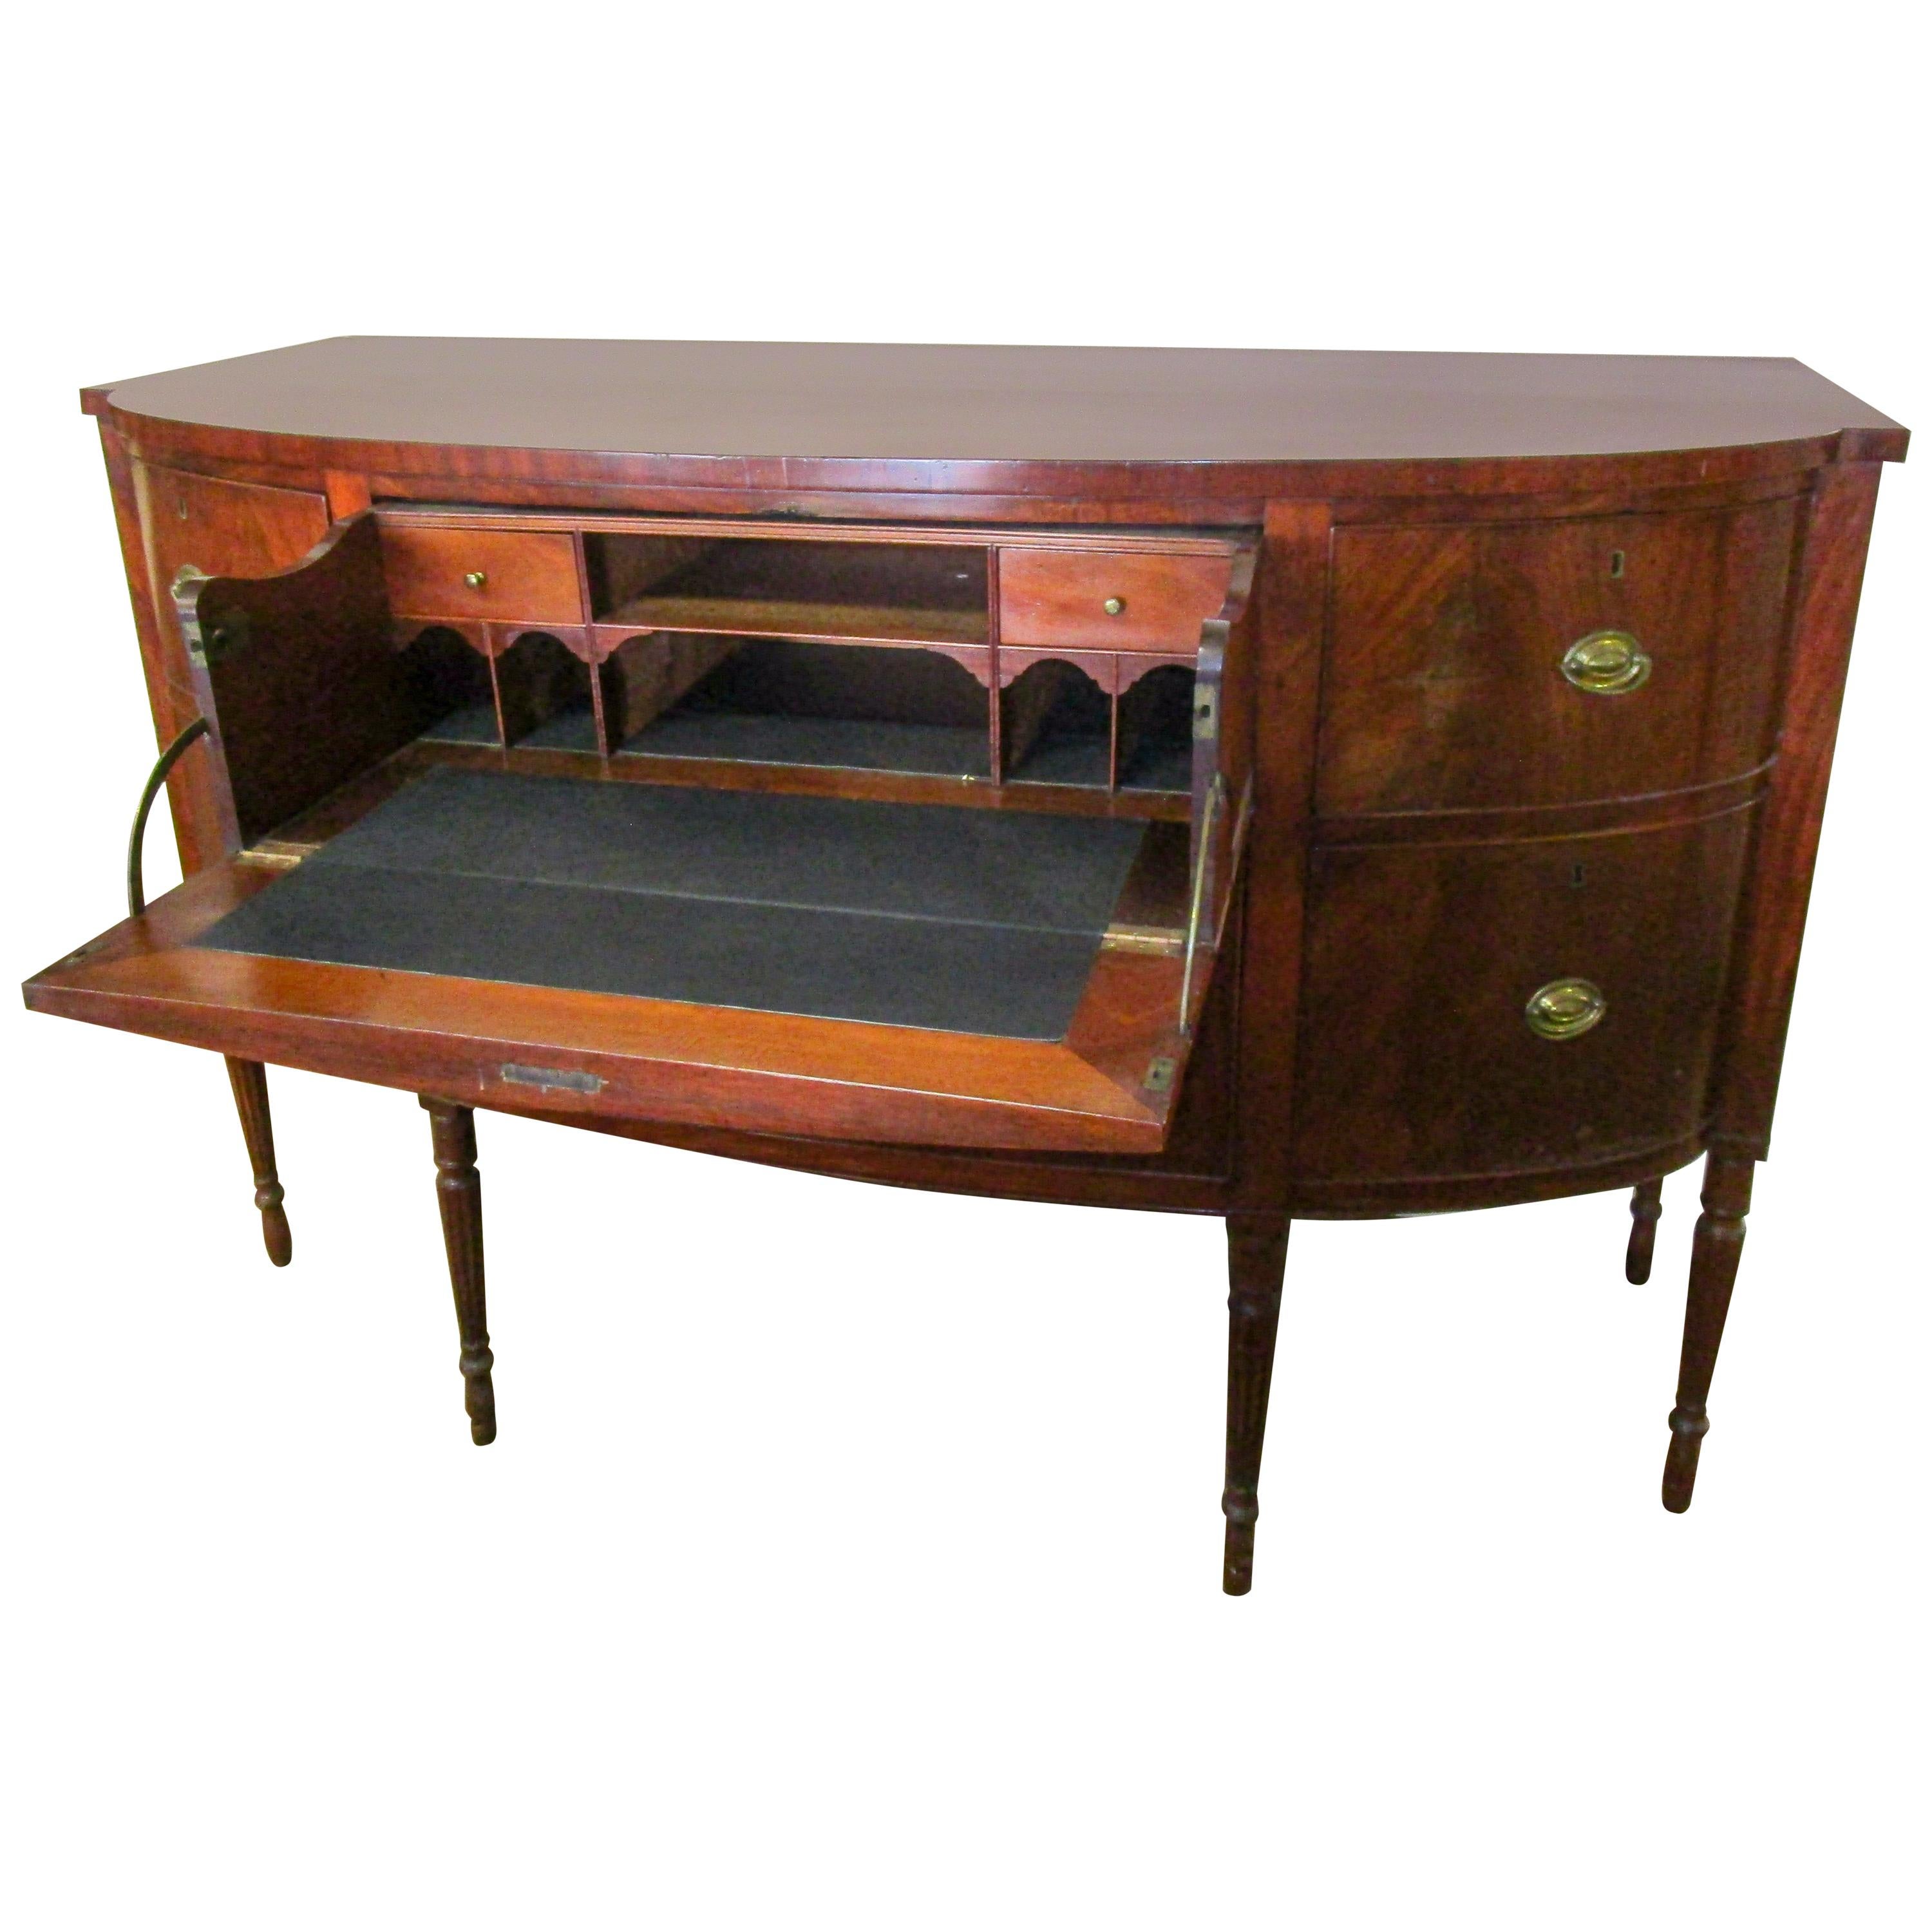 Amerikanisches Sideboard im Sheraton-Stil des frühen 19. Jahrhunderts mit amerikanischer Bogenfront und ausklappbarem Schreibtisch